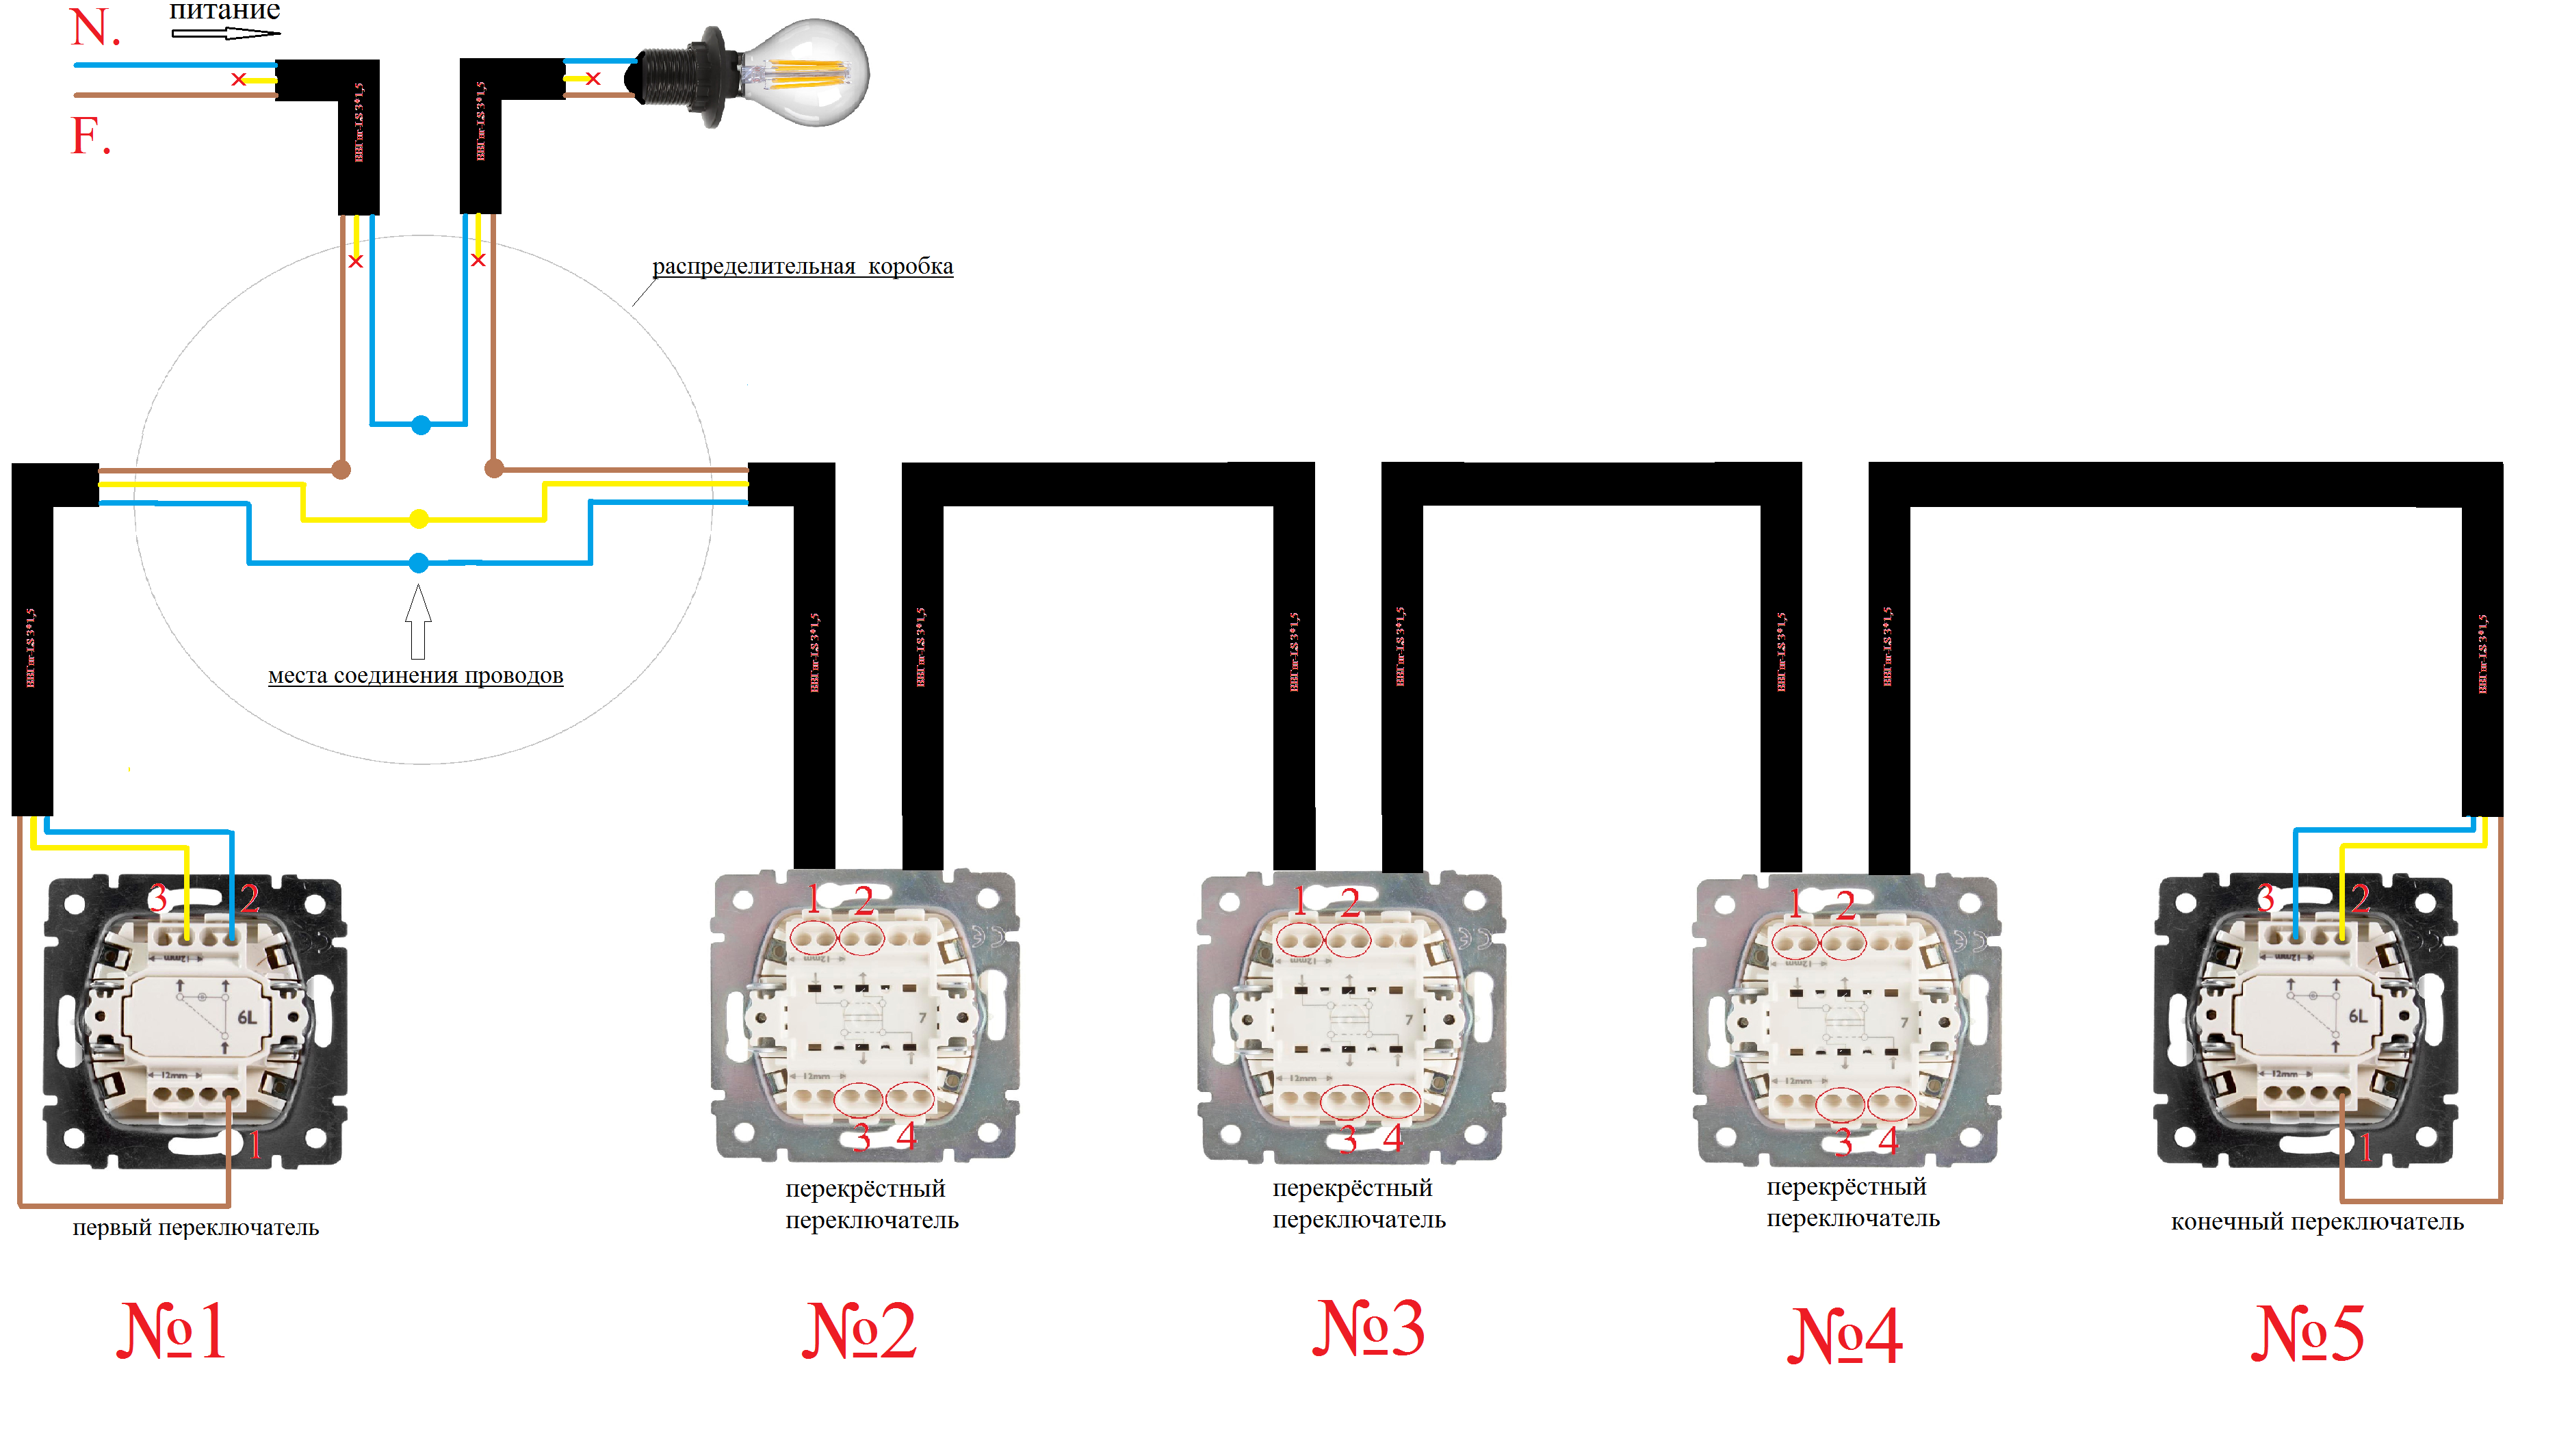 Как подключить 5 выключателей. 4 Проходных выключателя схема подключения. Схема подключения проходных выключателей из 4. Схема подключения проходных выключателей с 4 мест. Проходной выключатель с 4 мест схема подключения.